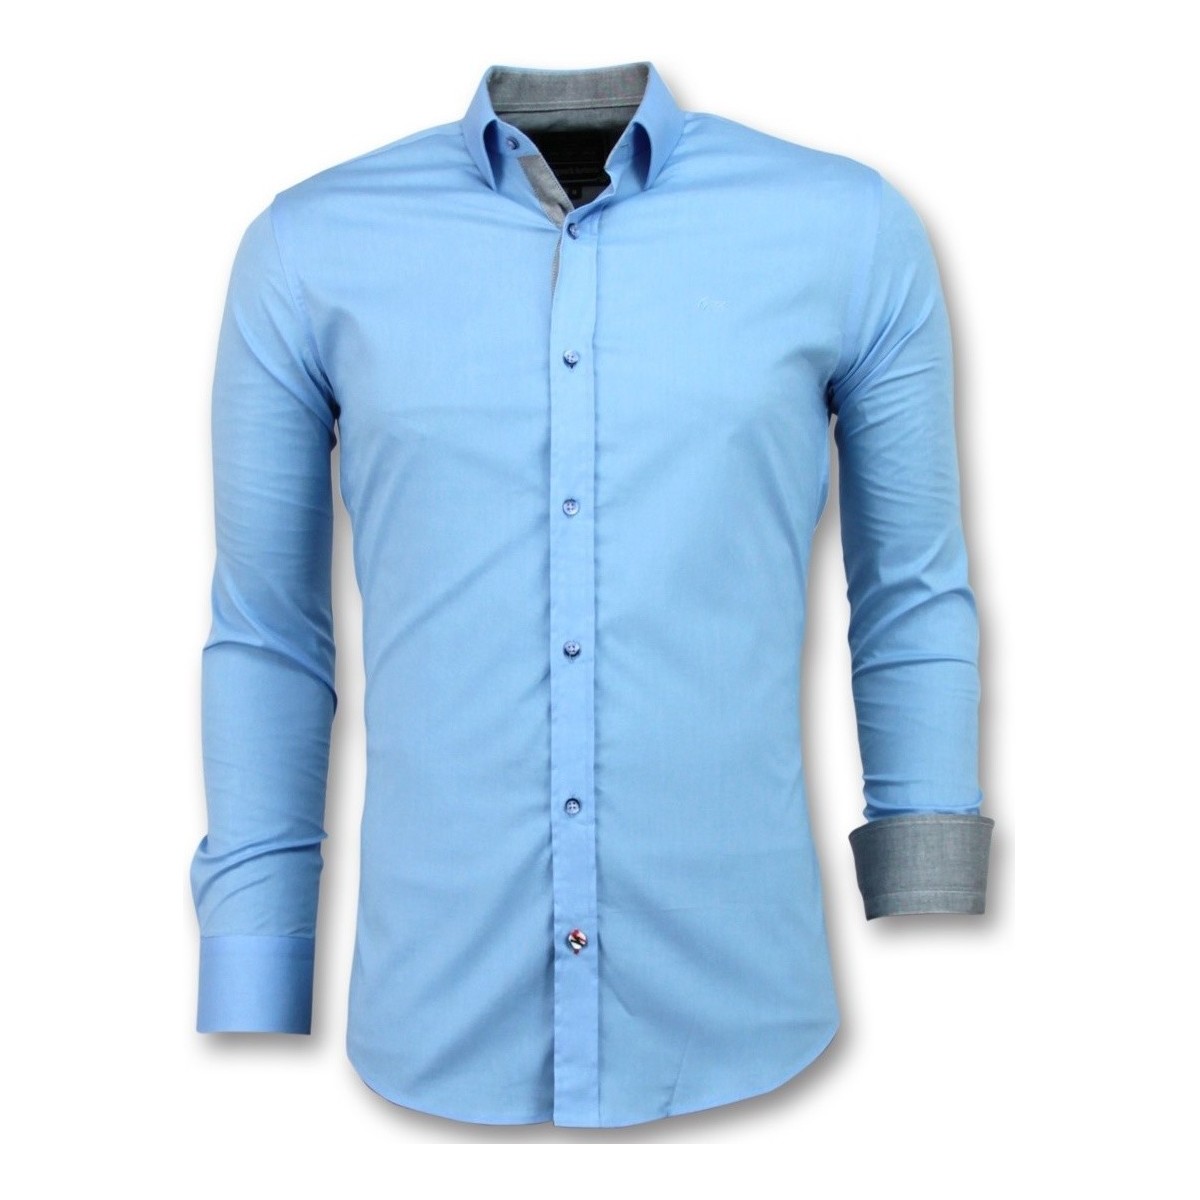 tekstylia Męskie Koszule z długim rękawem Tony Backer 102436890 Niebieski